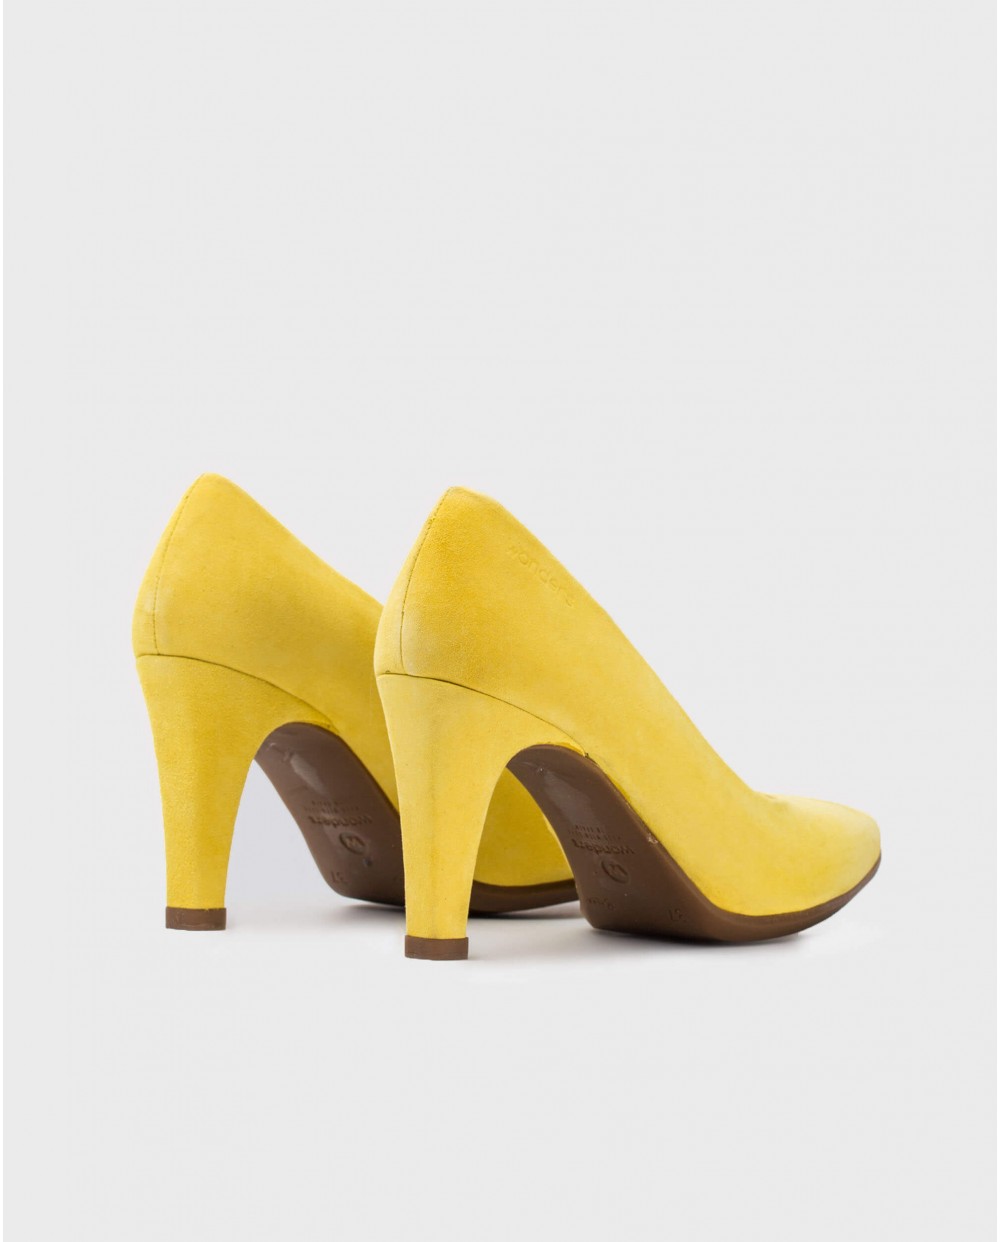 Wonders-Heels-Suede High heeled shoes